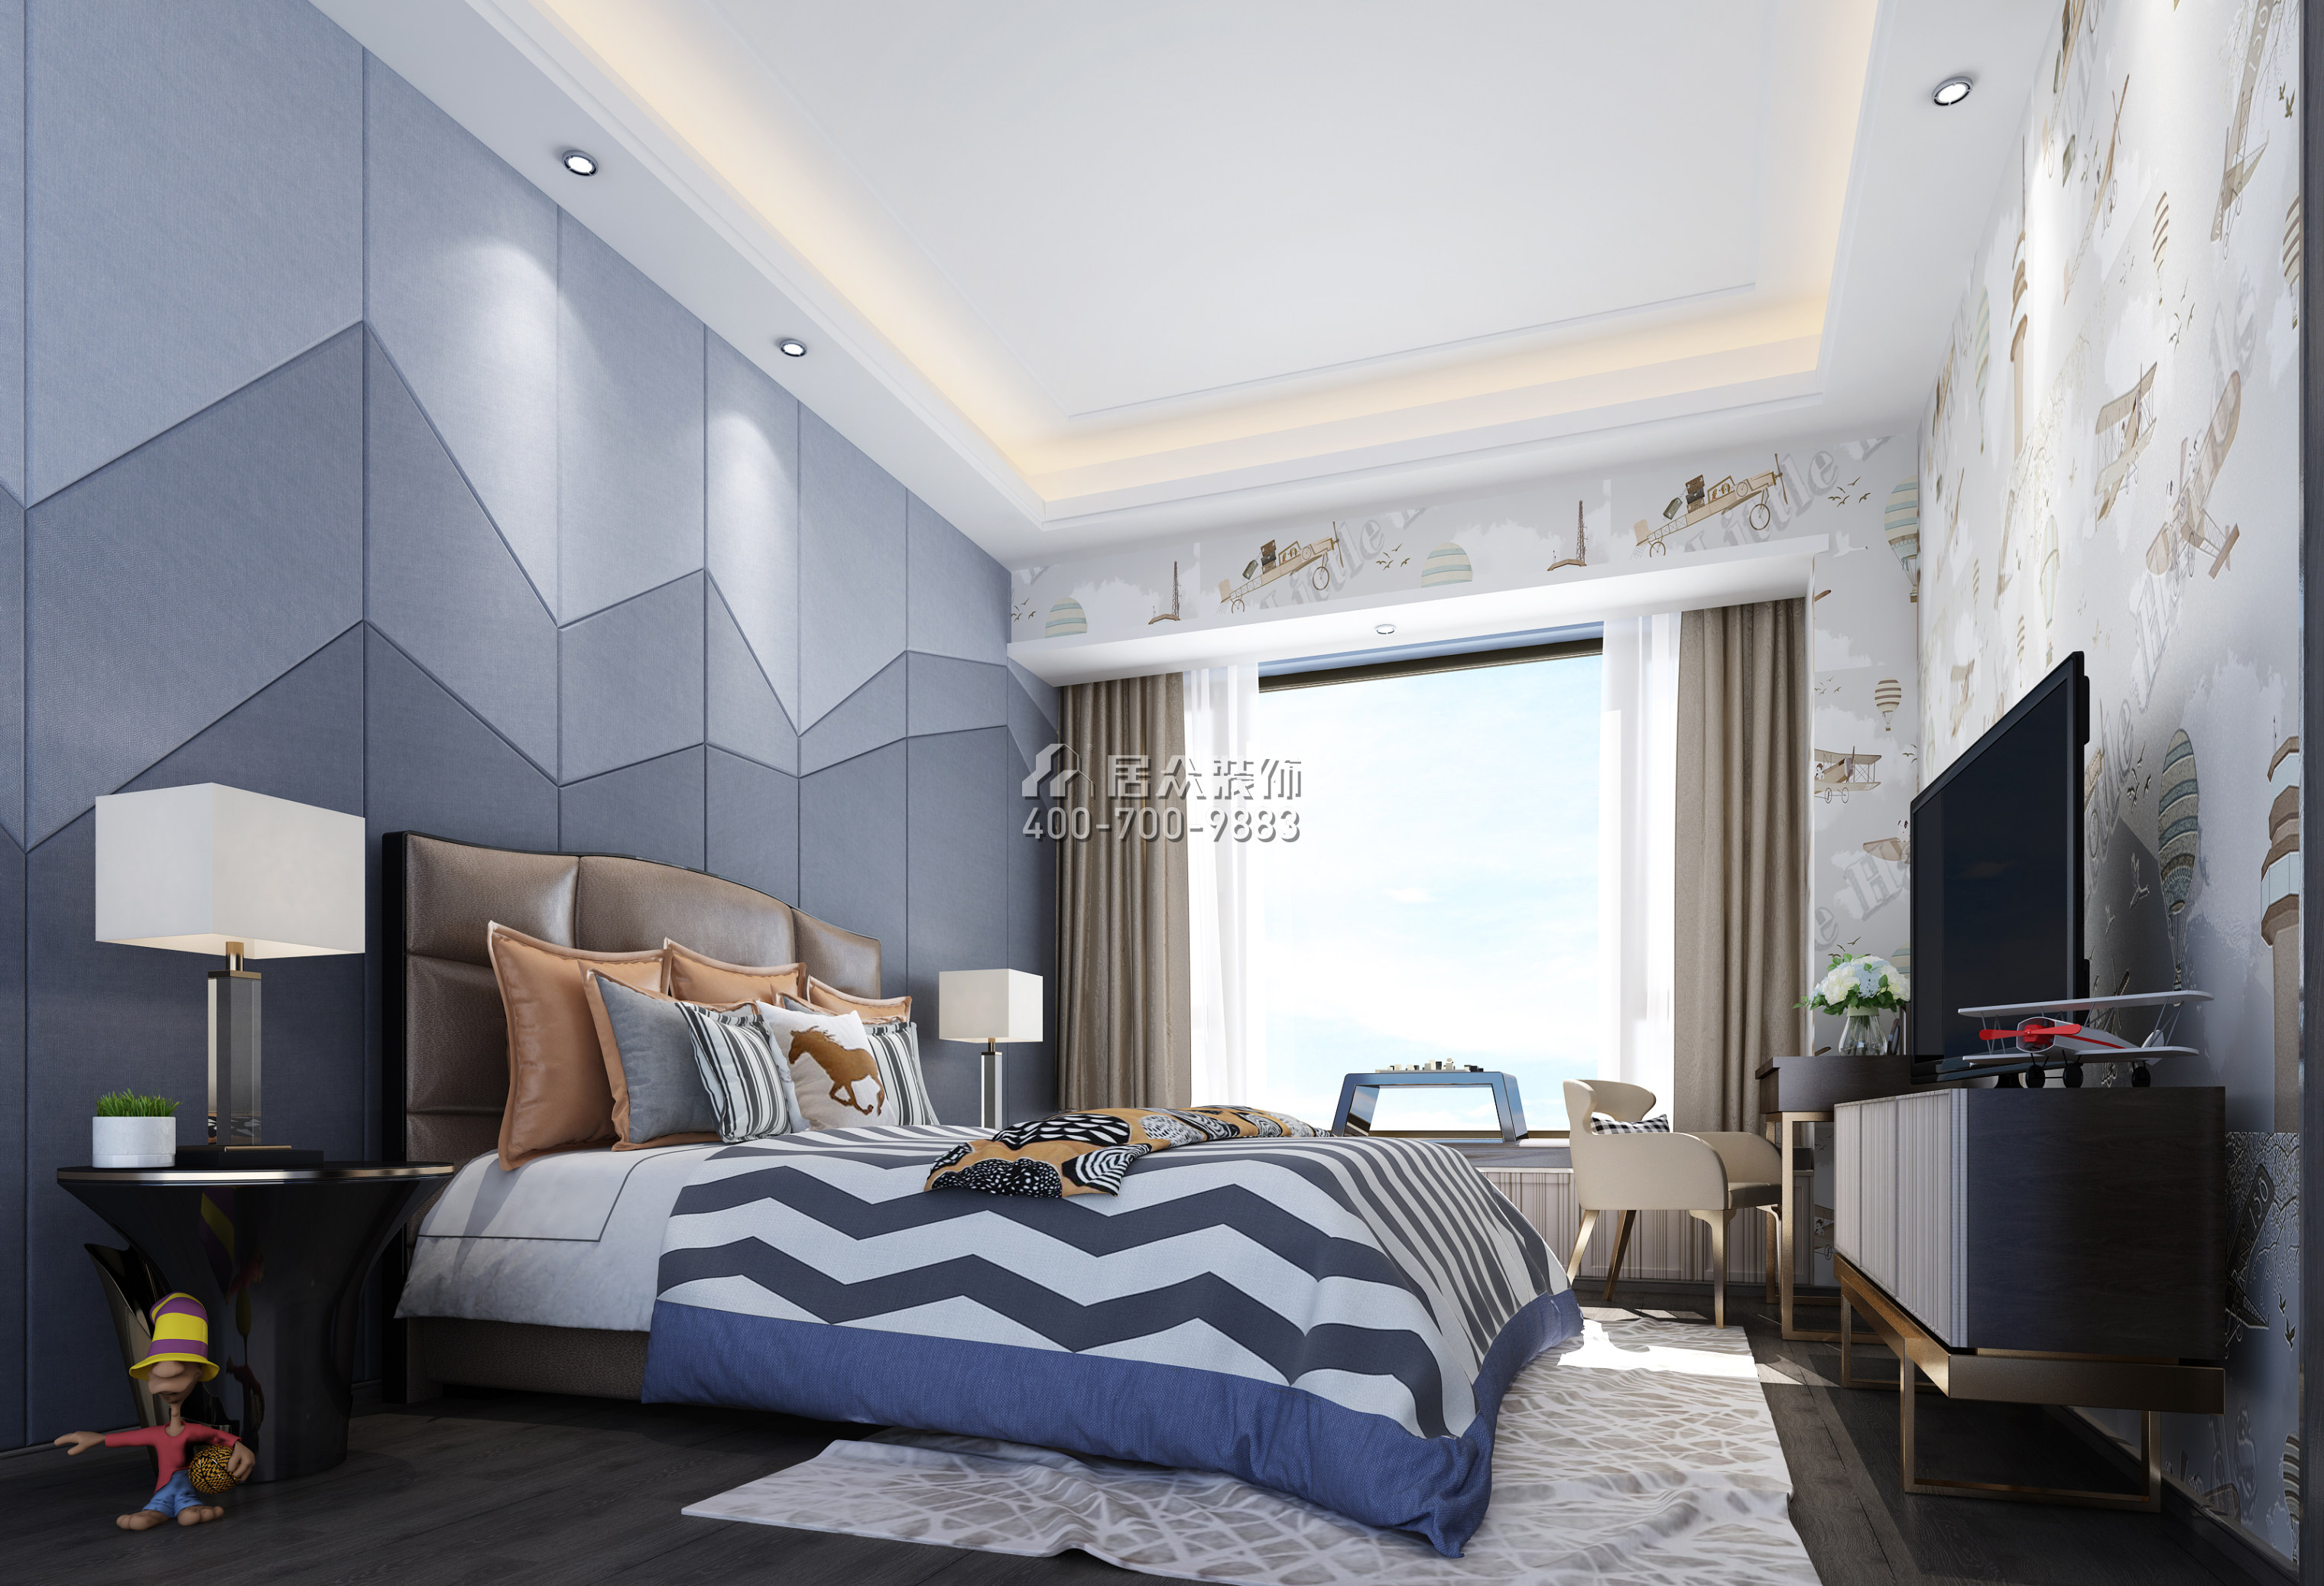 保利国际广场250平方米现代简约风格平层户型卧室装修效果图